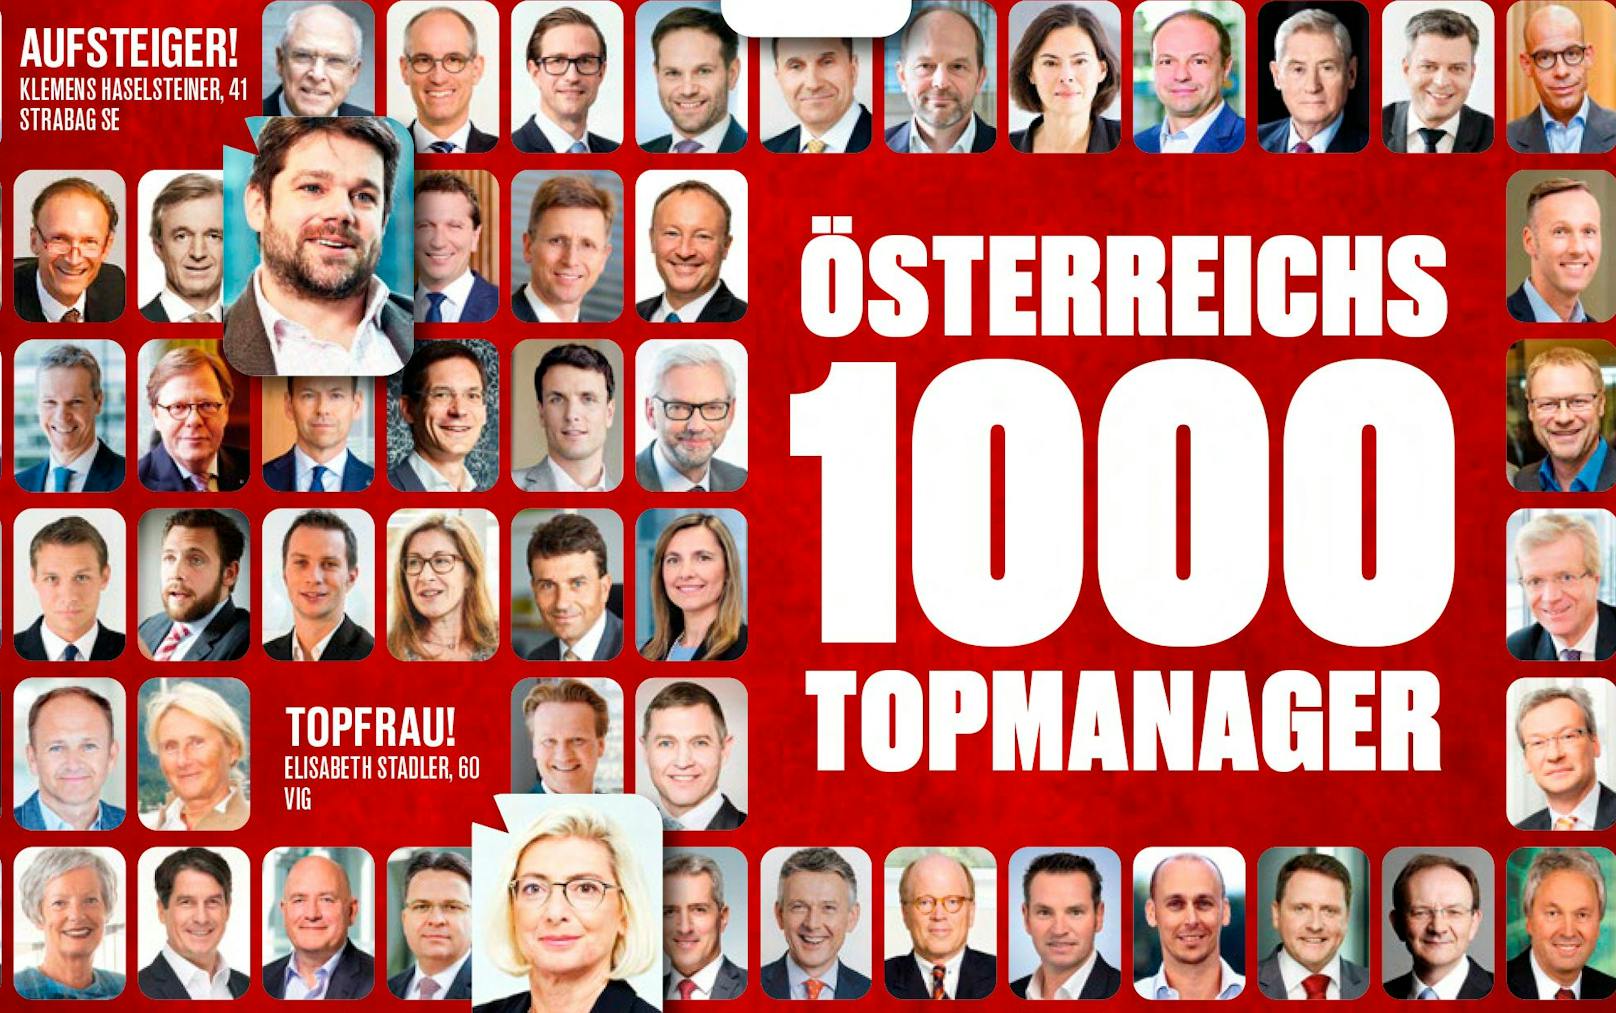 Ausgewertet: Die häufigsten Vornamen unter Österreichs 1.000 Top-Managern